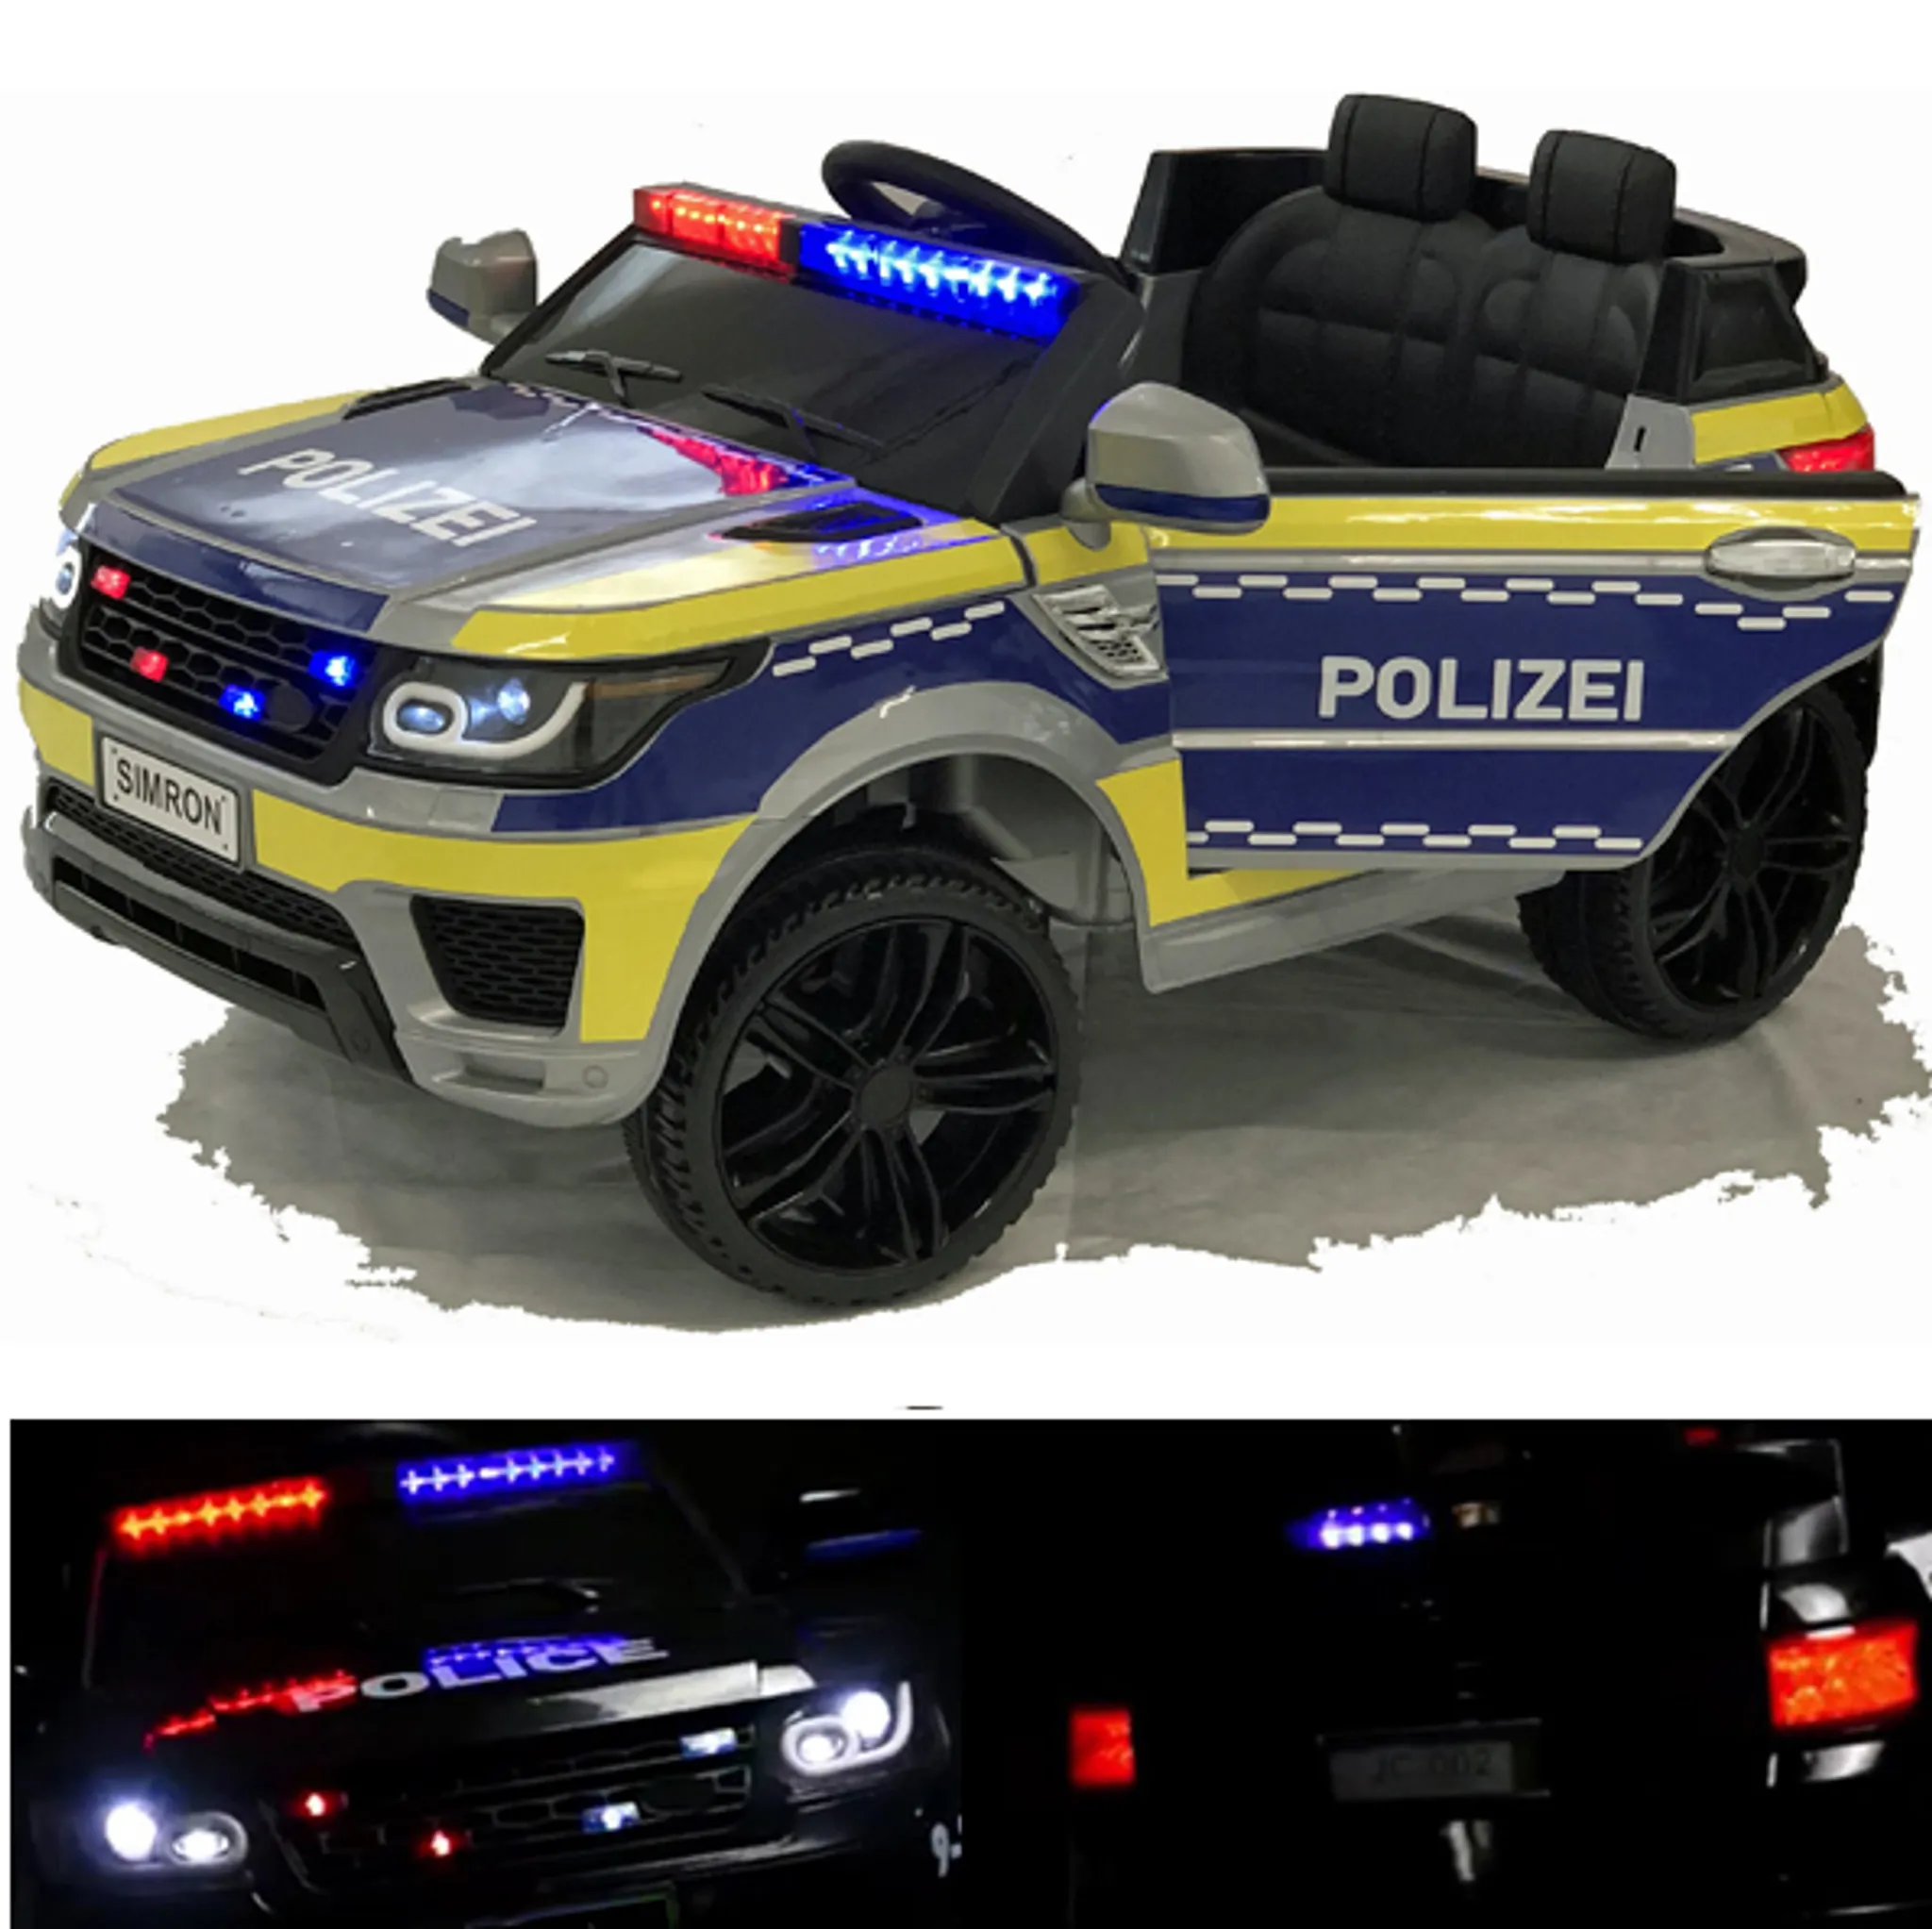 Kinder Elektroauto RC Polizeiwagen 12 V ferngesteuert mit Licht